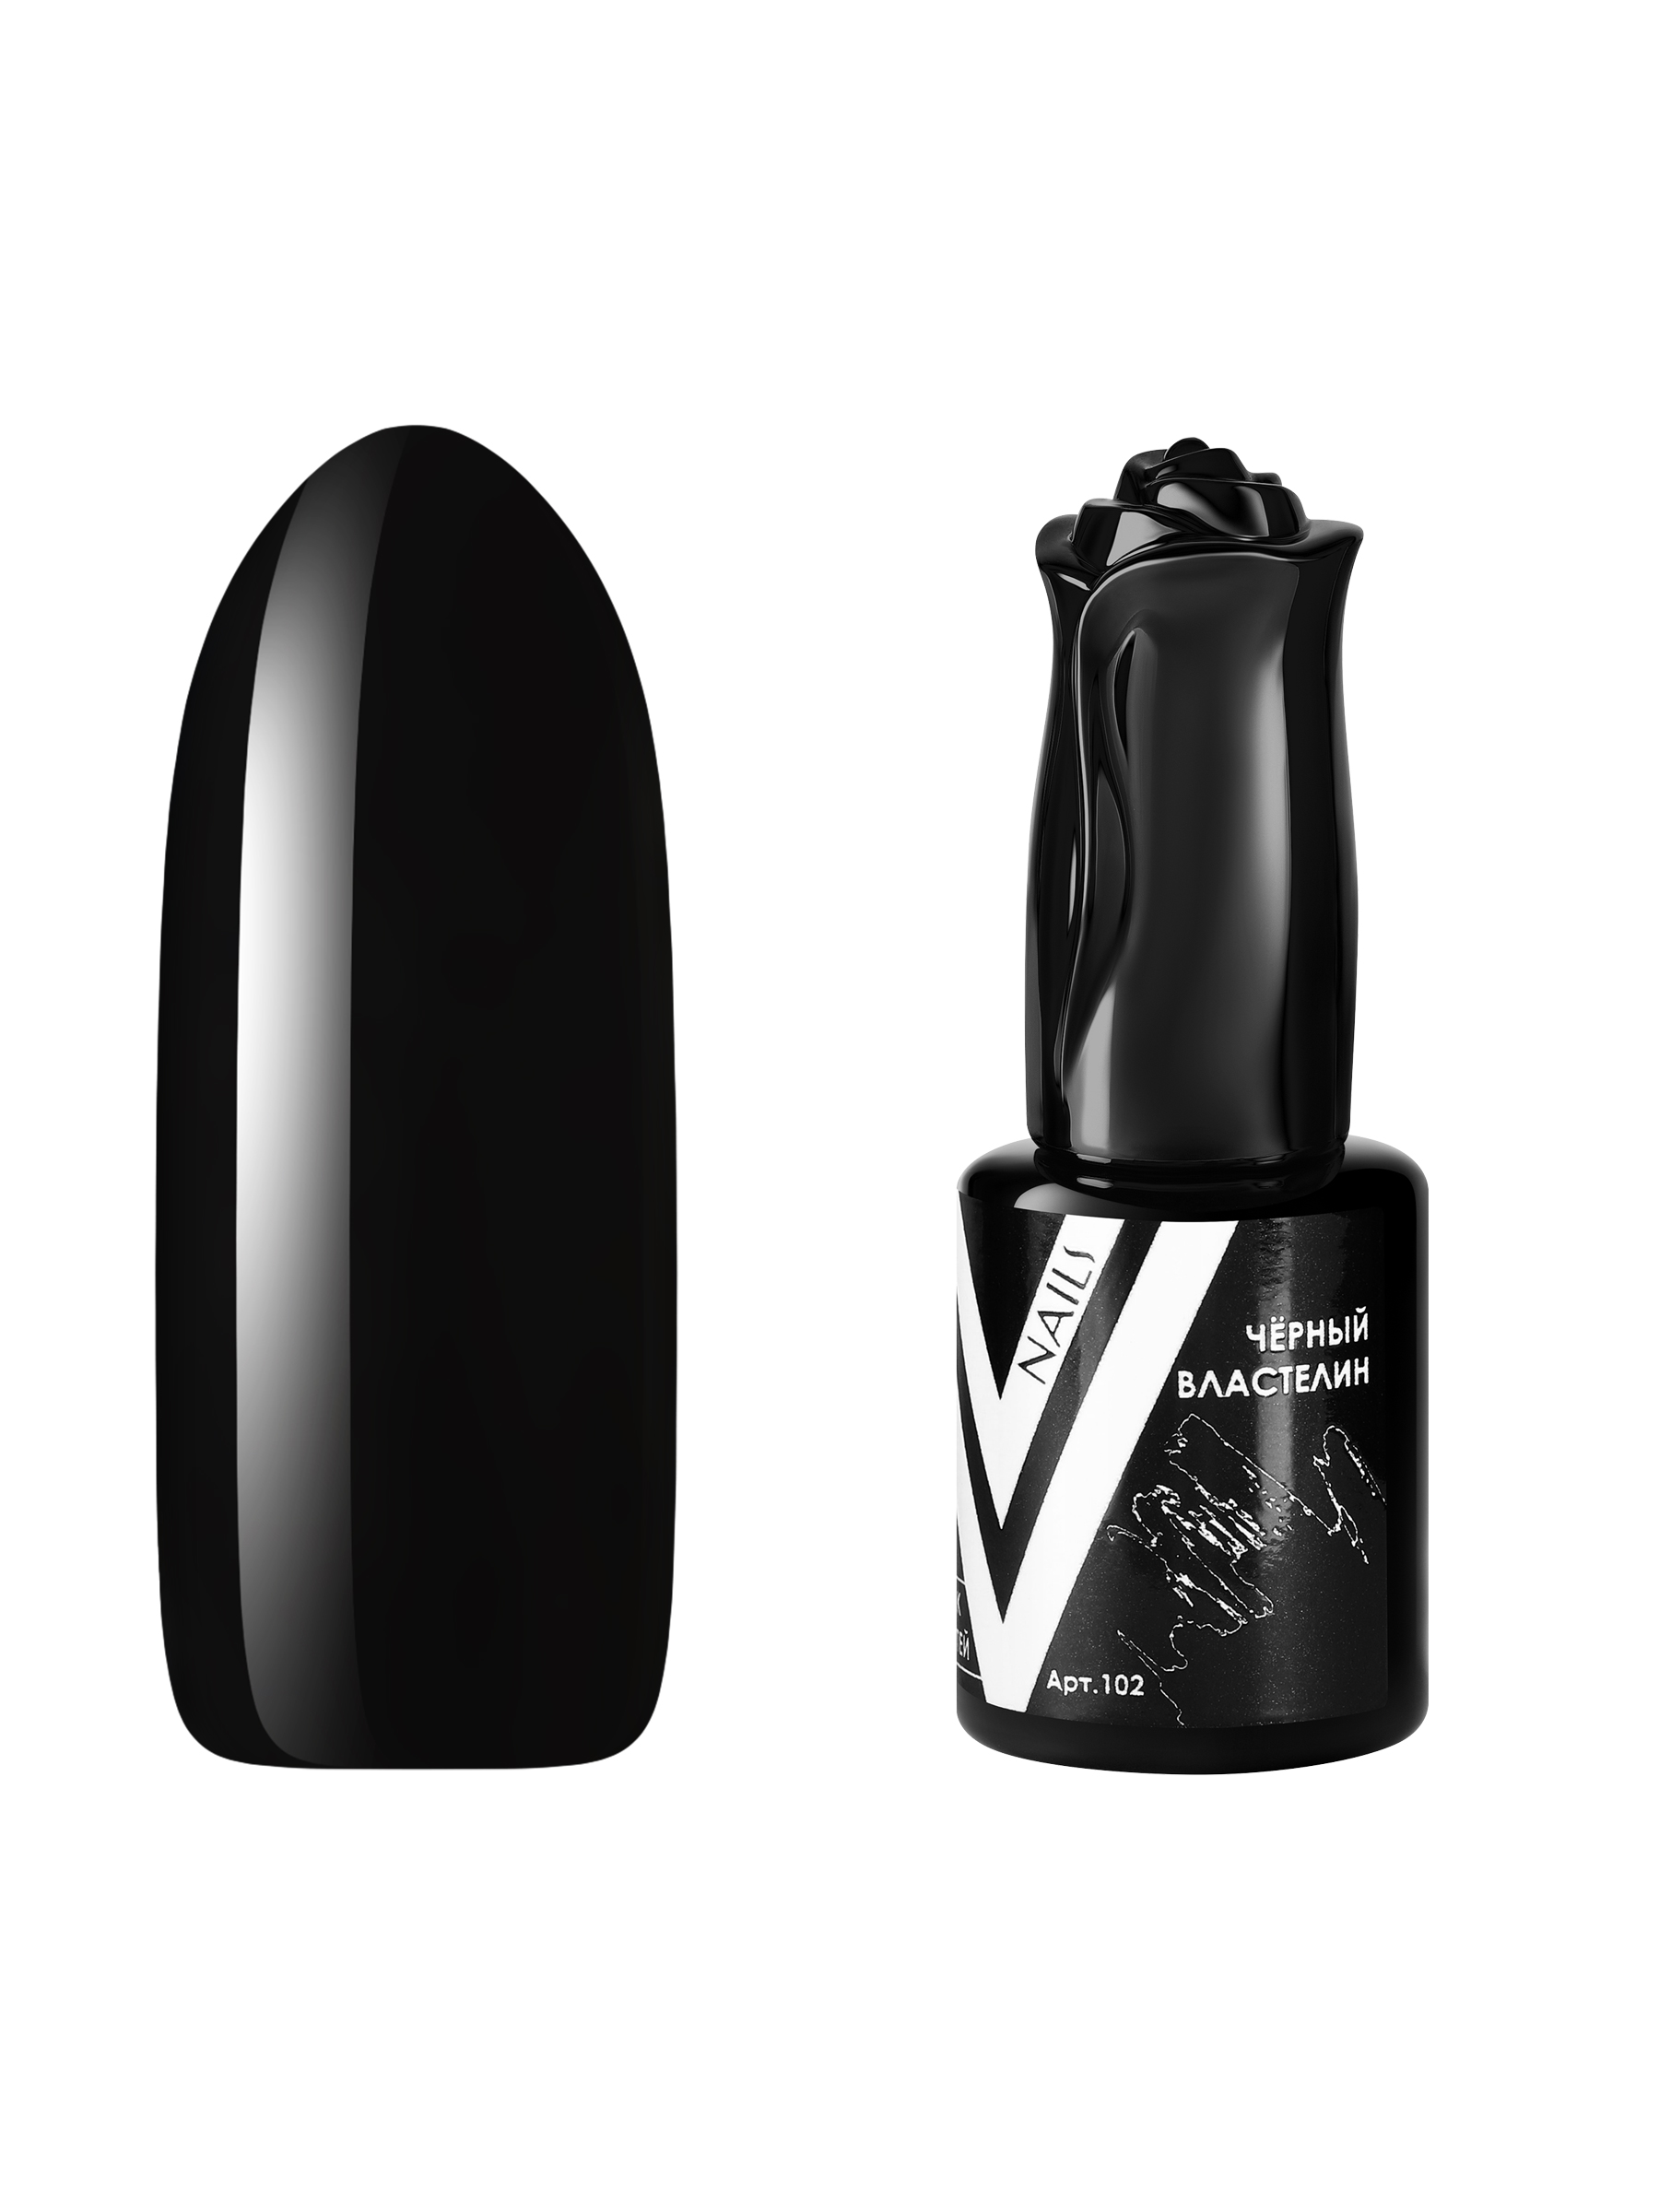 Гель-лак для ногтей Vogue Nails плотный самовыравнивающийся, темный, черный, 10 мл властелин пыли